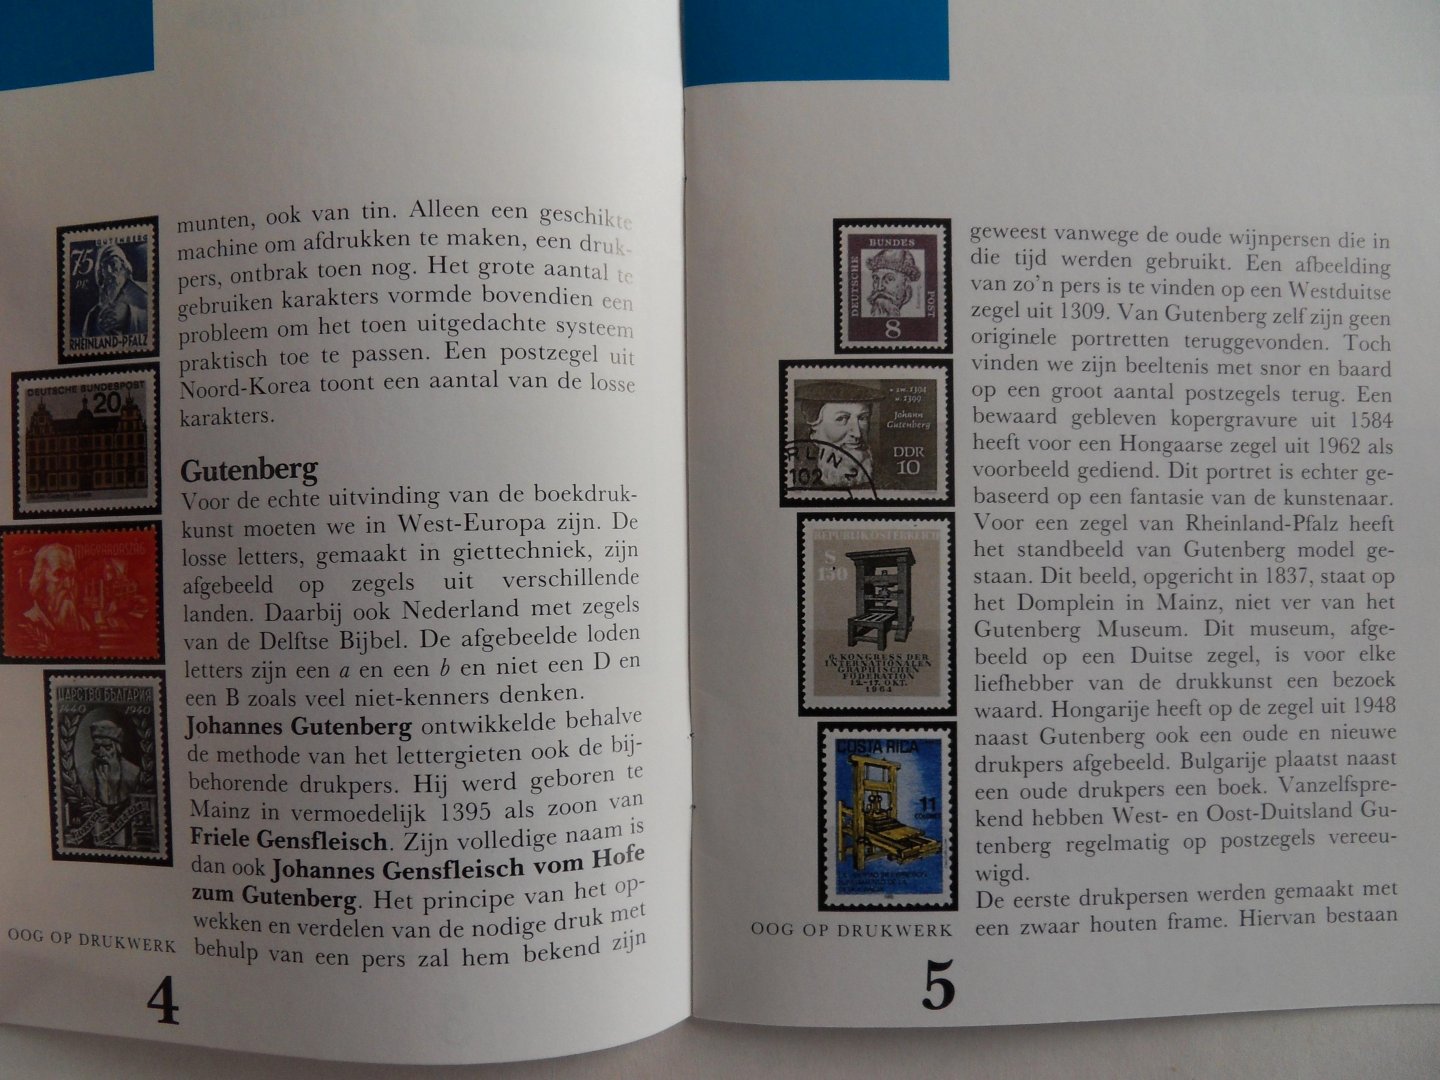 Meurs, G.N. jr.; Simons, C.F.J. - Kleine geschiedenis van de Boekdrukkunst op Postzegels. - Met circa 70 kleurenafbeeldingen van postzegels. [ Verscheen in de serie "Oog op Drukwerk".